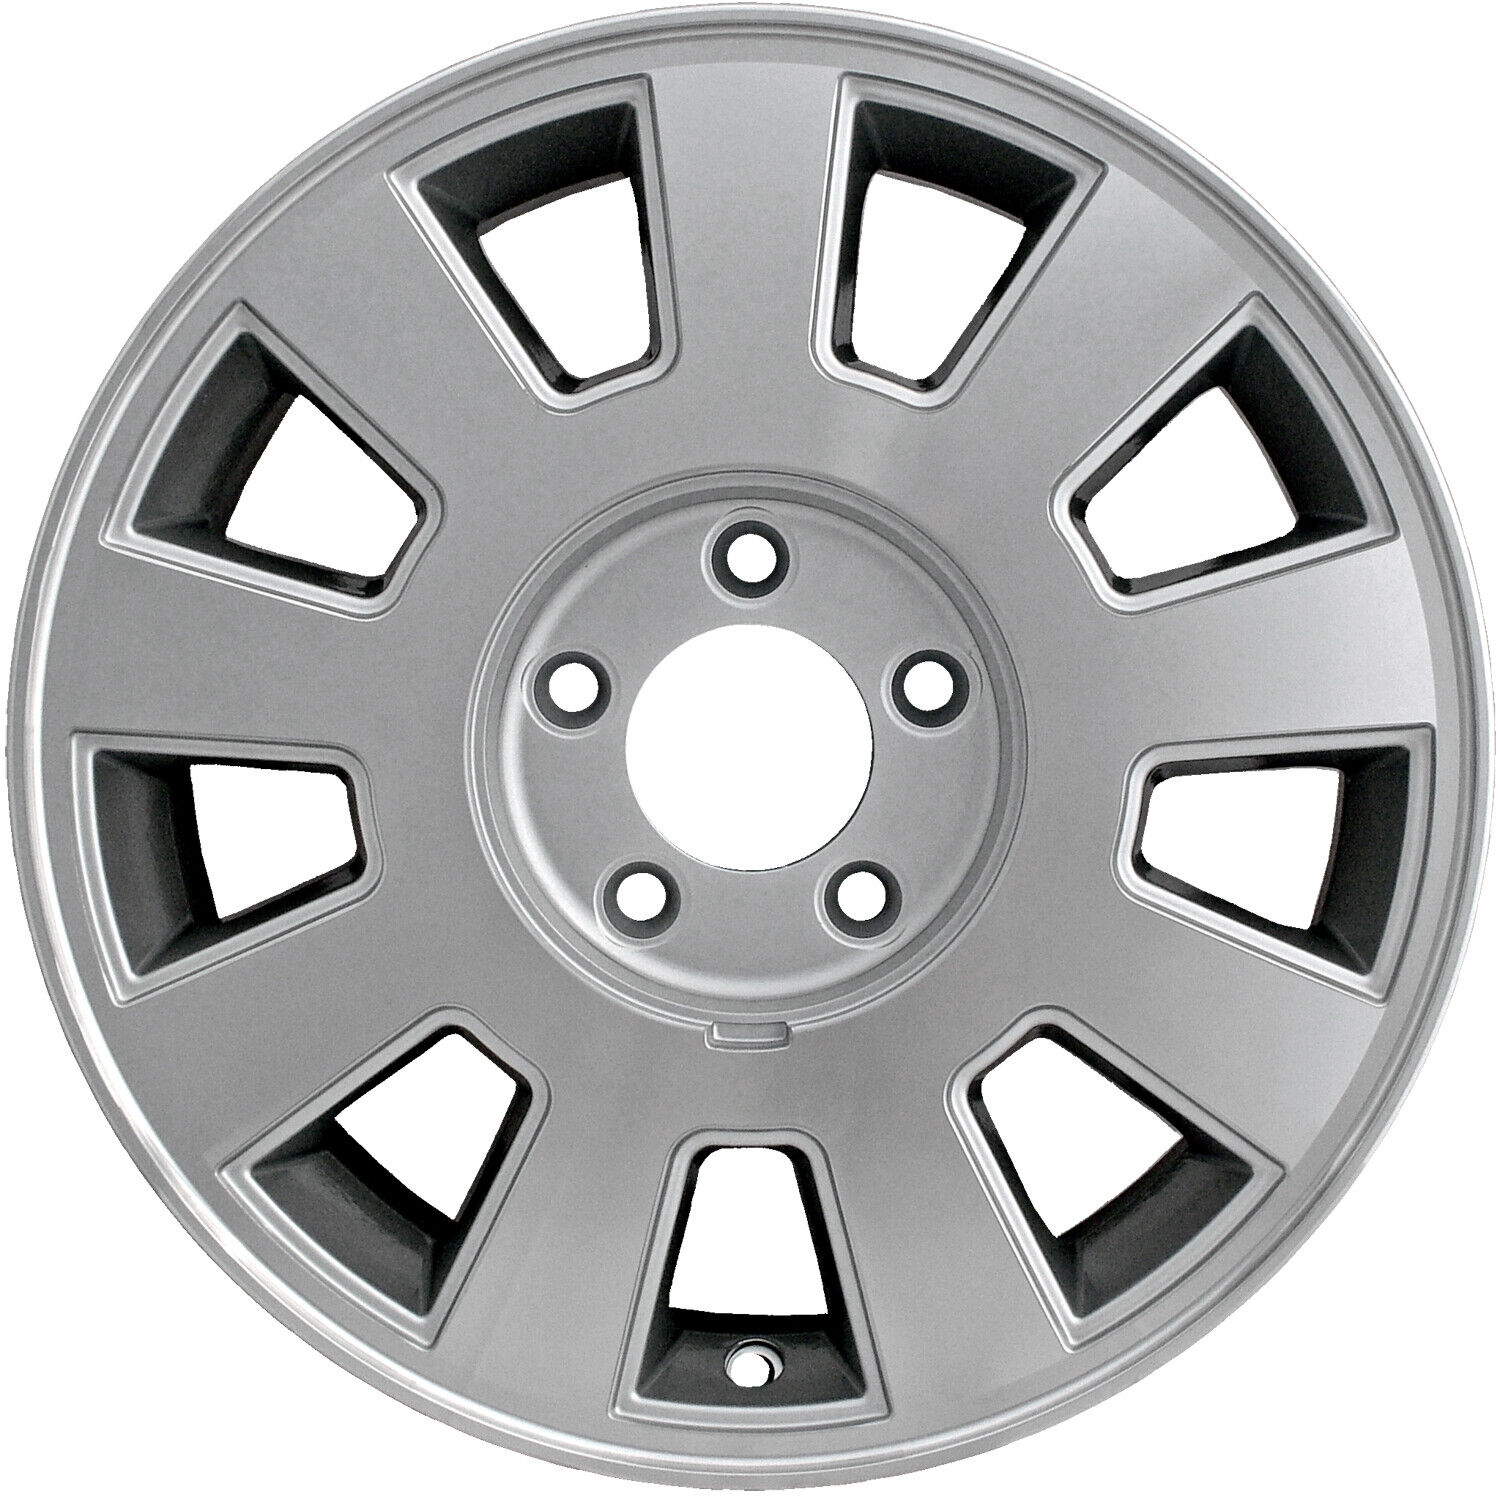 03496 Reconditioned OEM Aluminum Wheel 16x7 fits 2003-2005 Mercury Grand Marquis